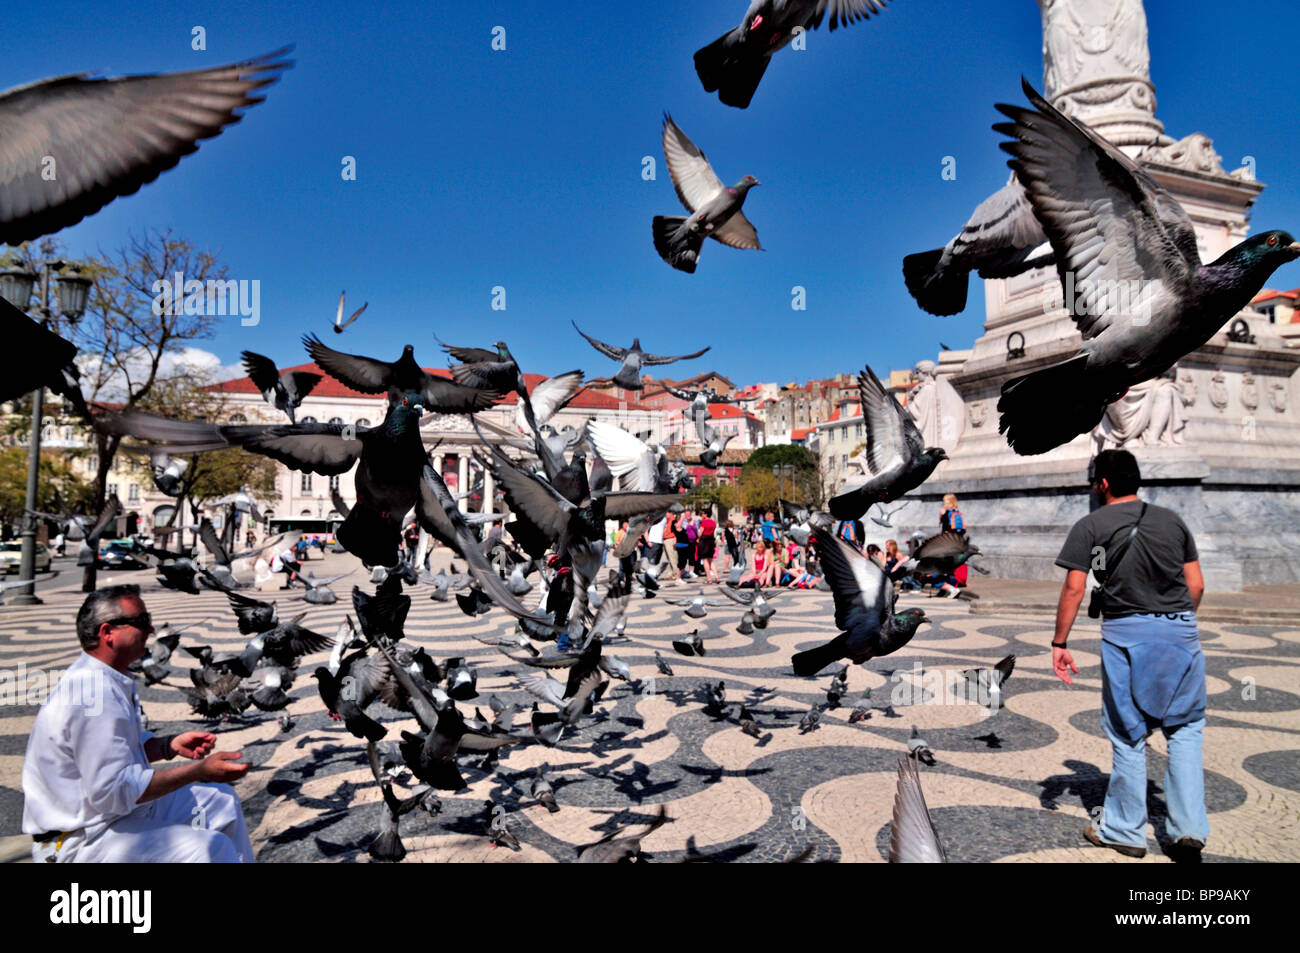 Portugal, Lisboa: el hombre dándole de comer a las palomas en la Plaza Rossio Foto de stock